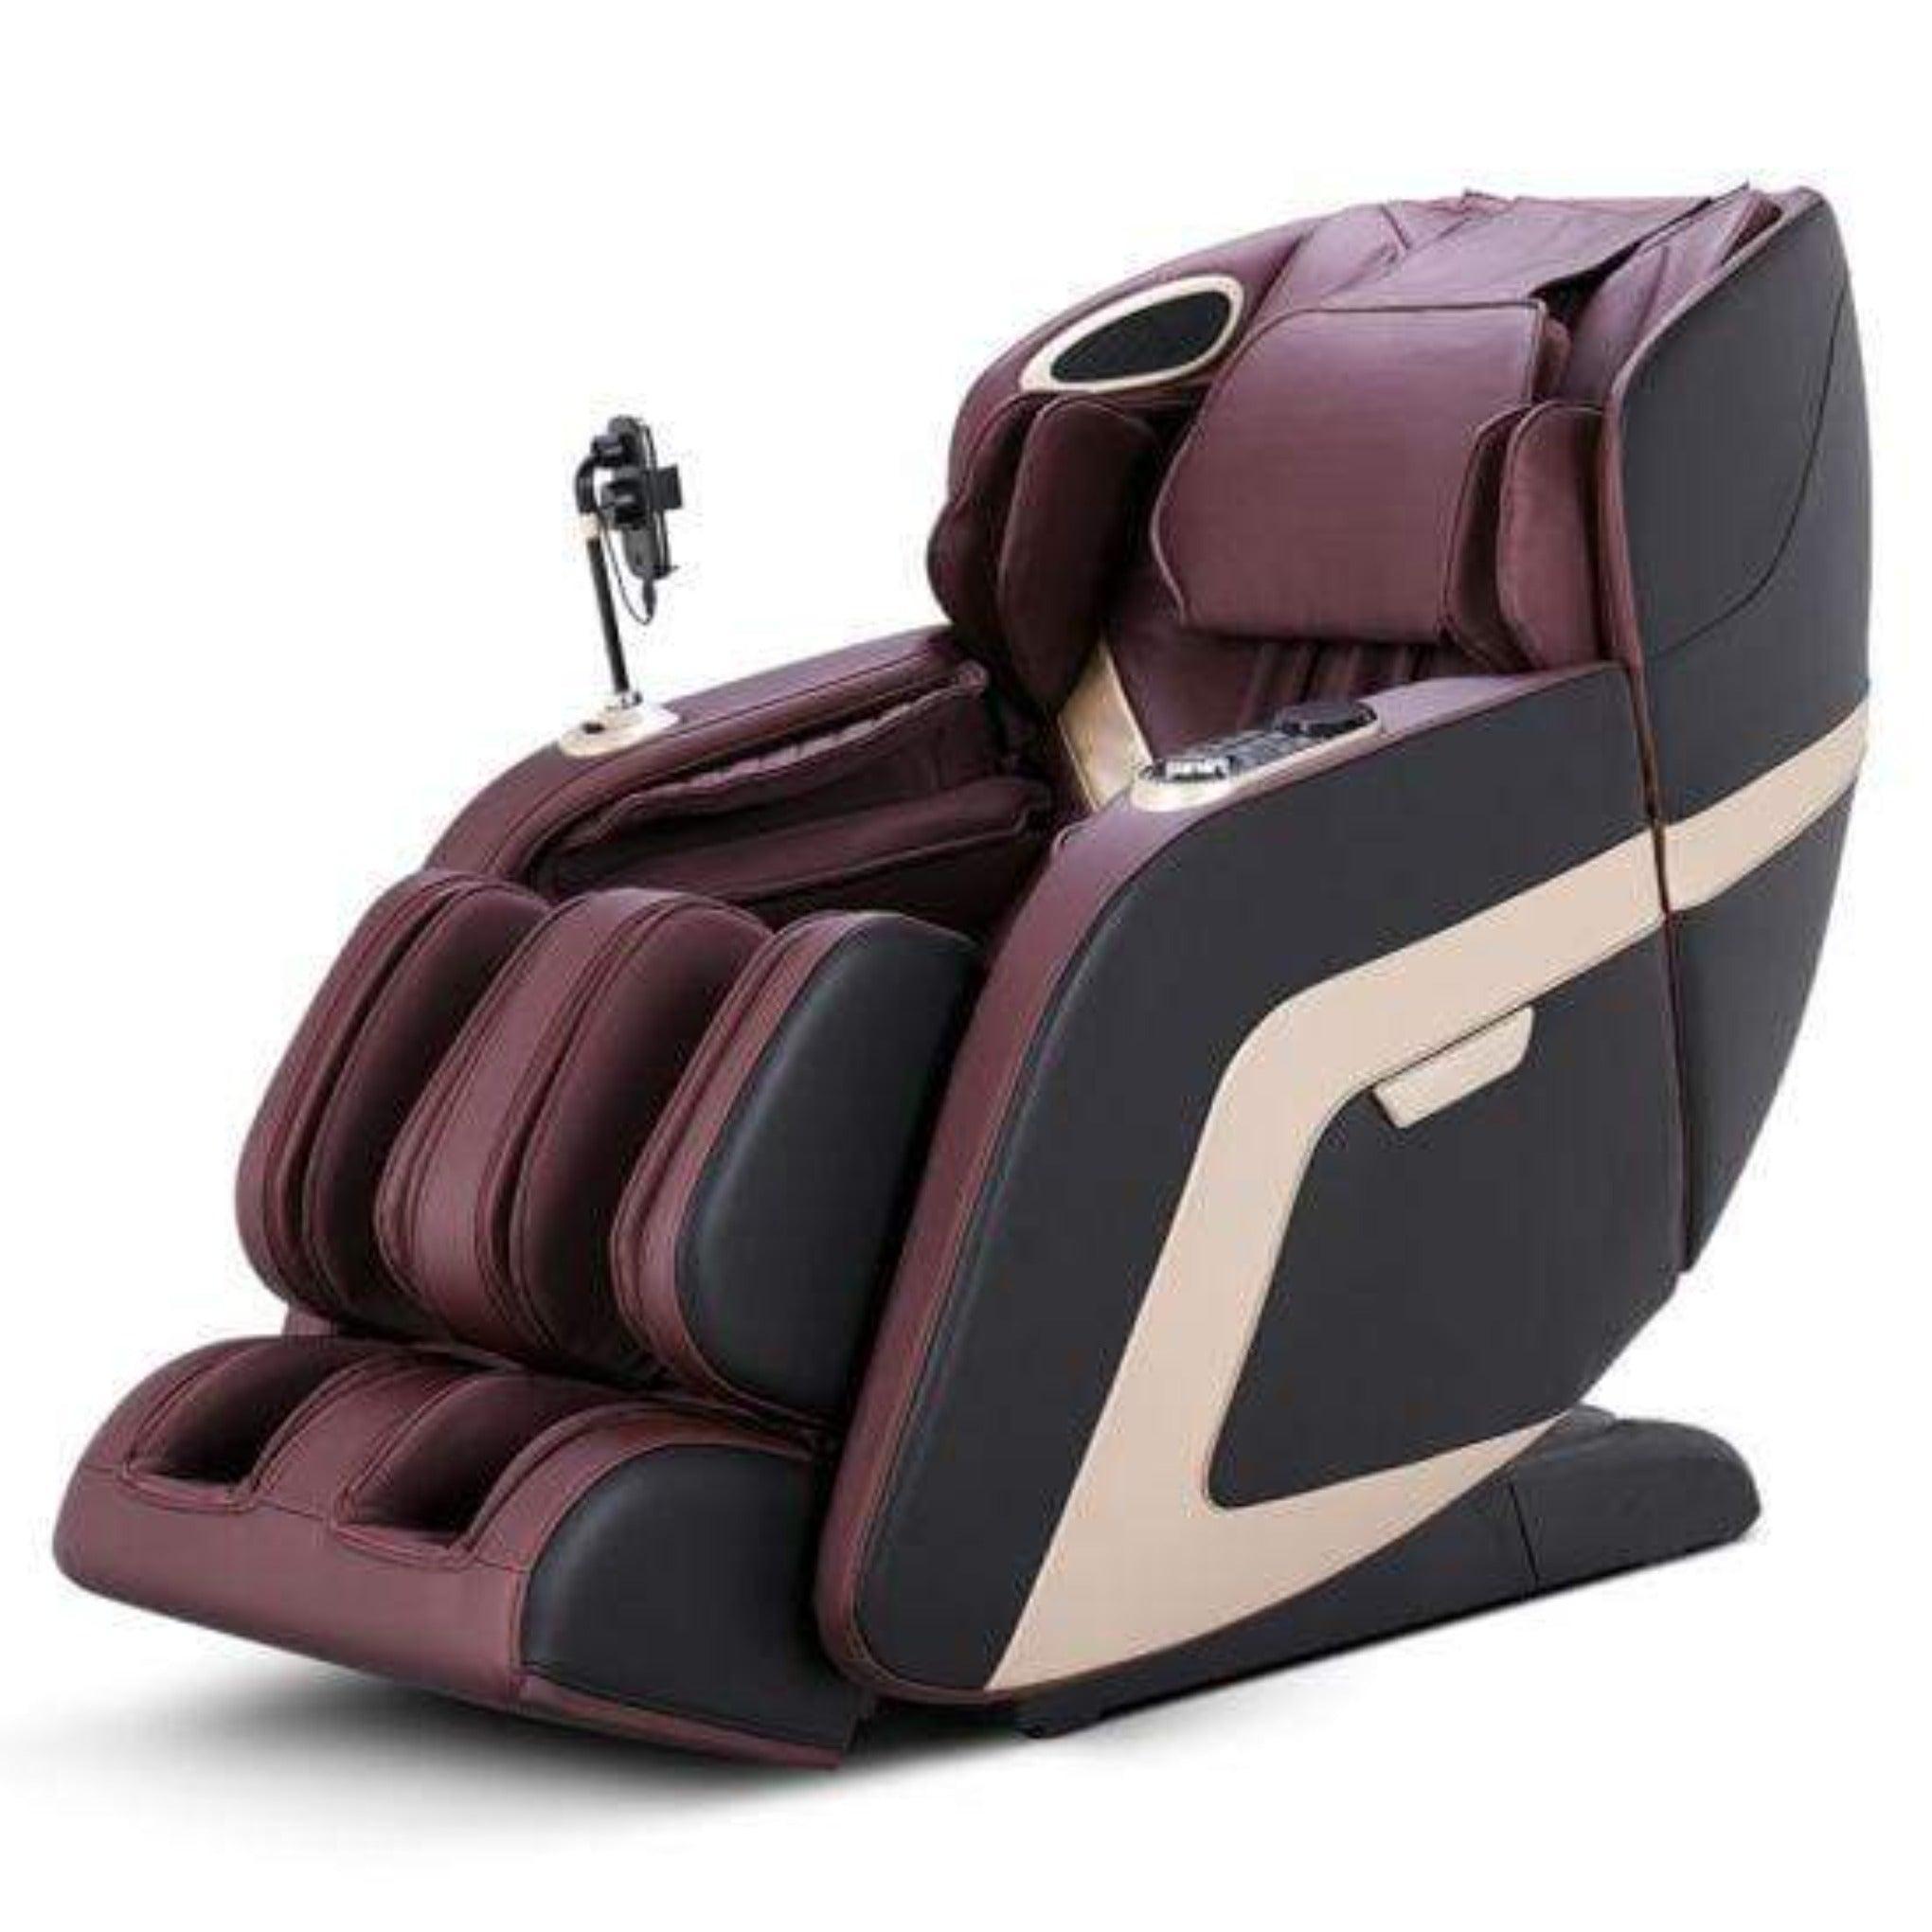 Morningstar Massage Chair